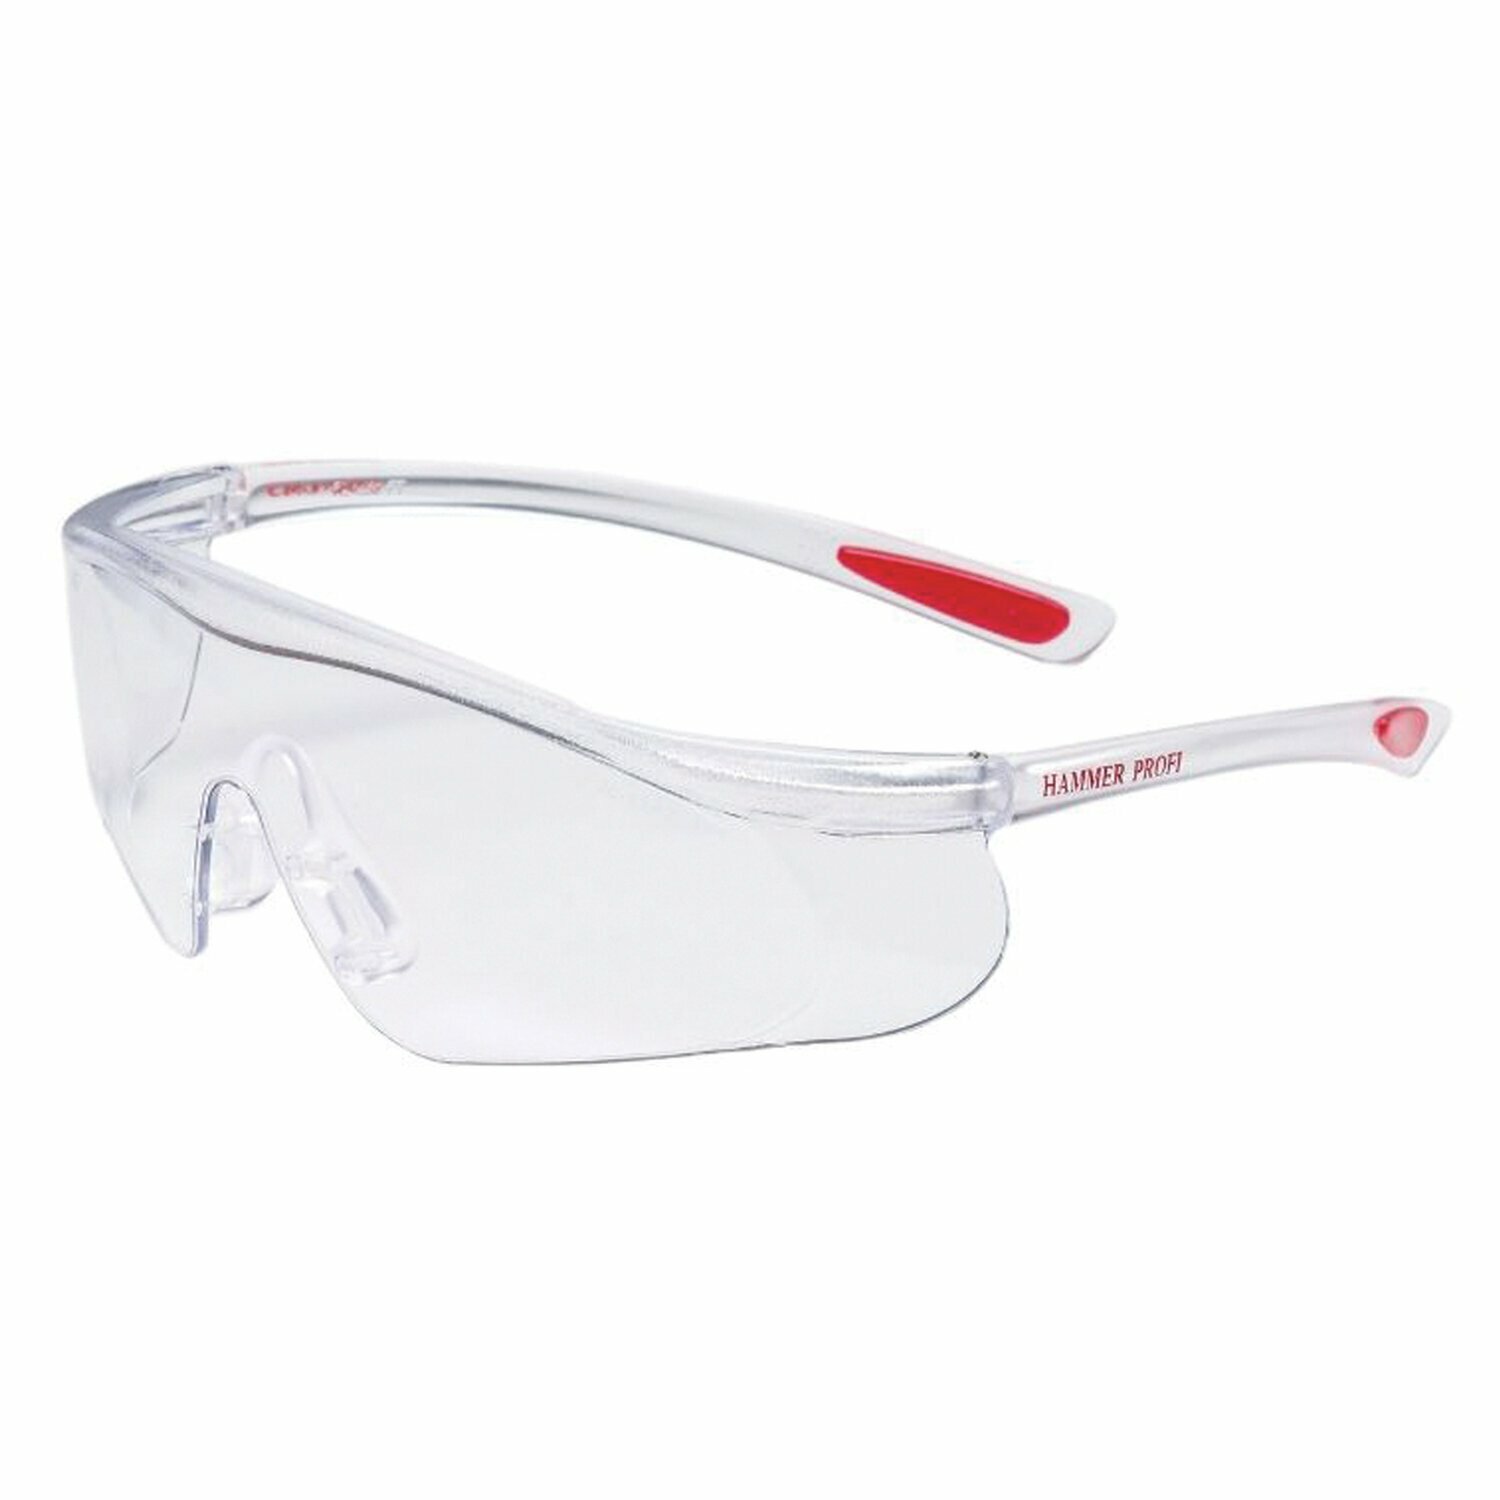 Очки защитные открытые РОСОМЗ О55 Hammer Profi super, прозрачные, незапотевающее покрытие, устойчивы к химичес 15530